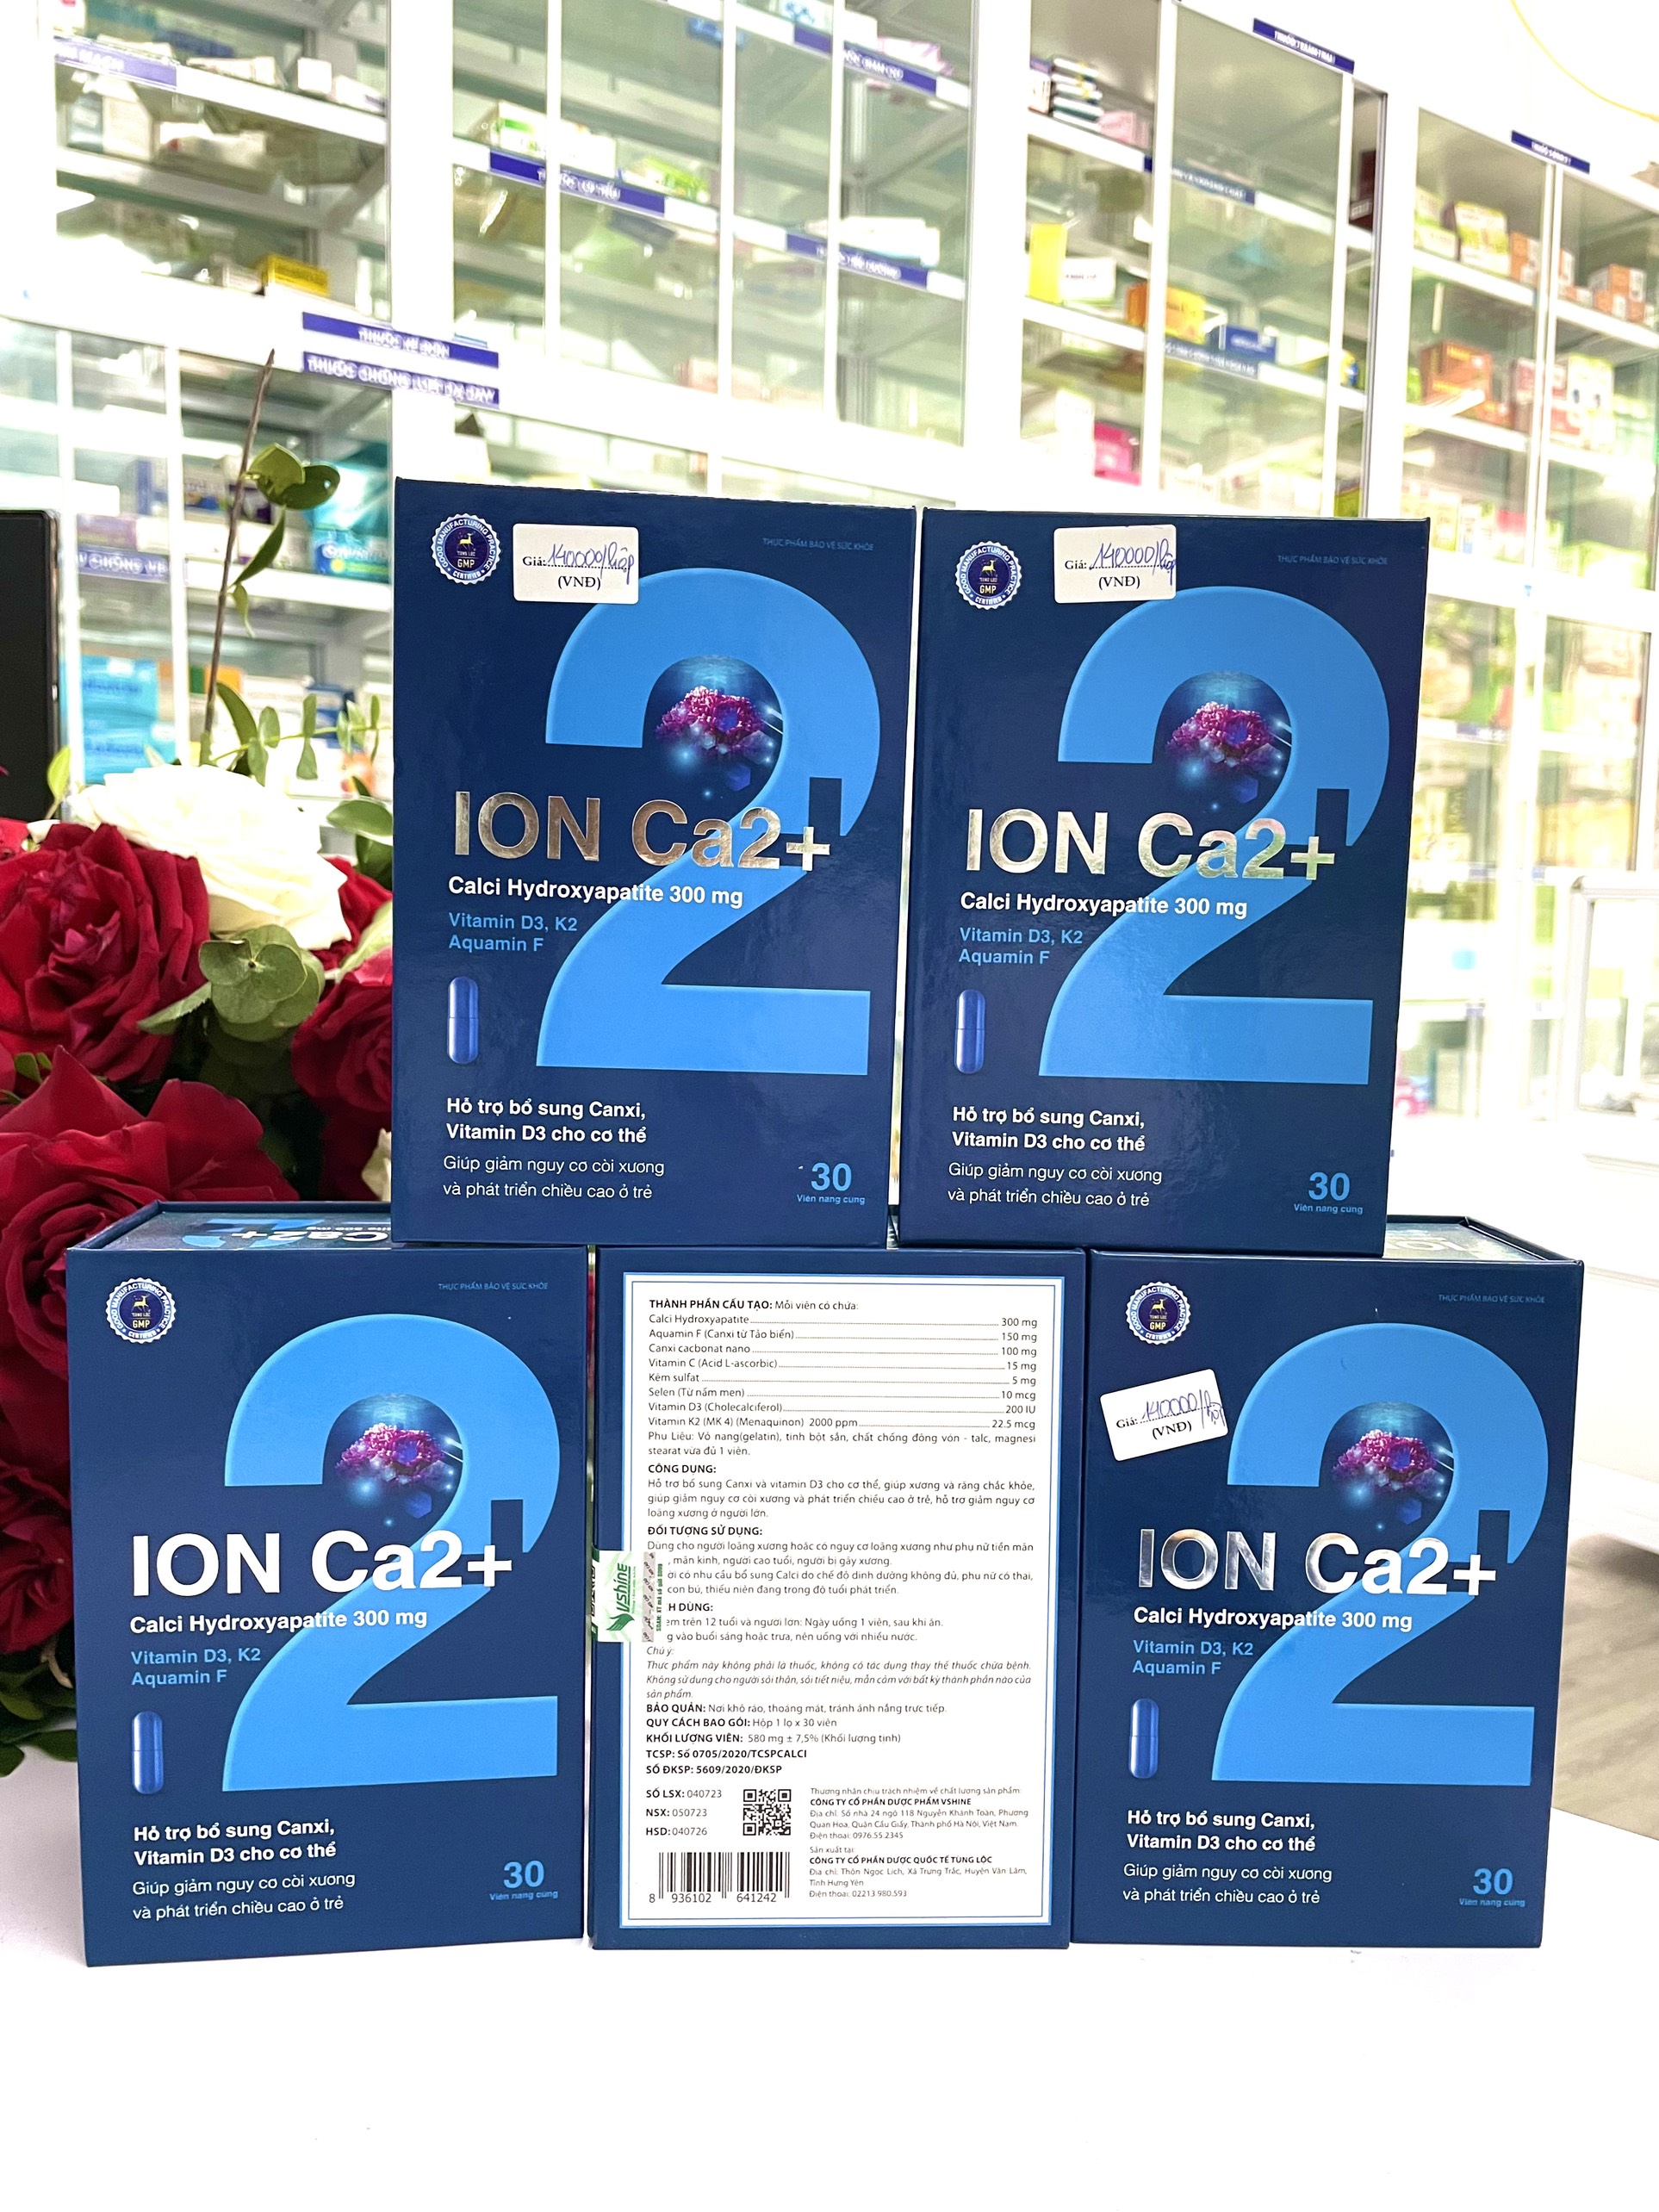 Ion Ca2+ Hỗ Trợ Bổ Sung Canxi Và Vitamin D3, Giúp Phát Triển Chiều Cao